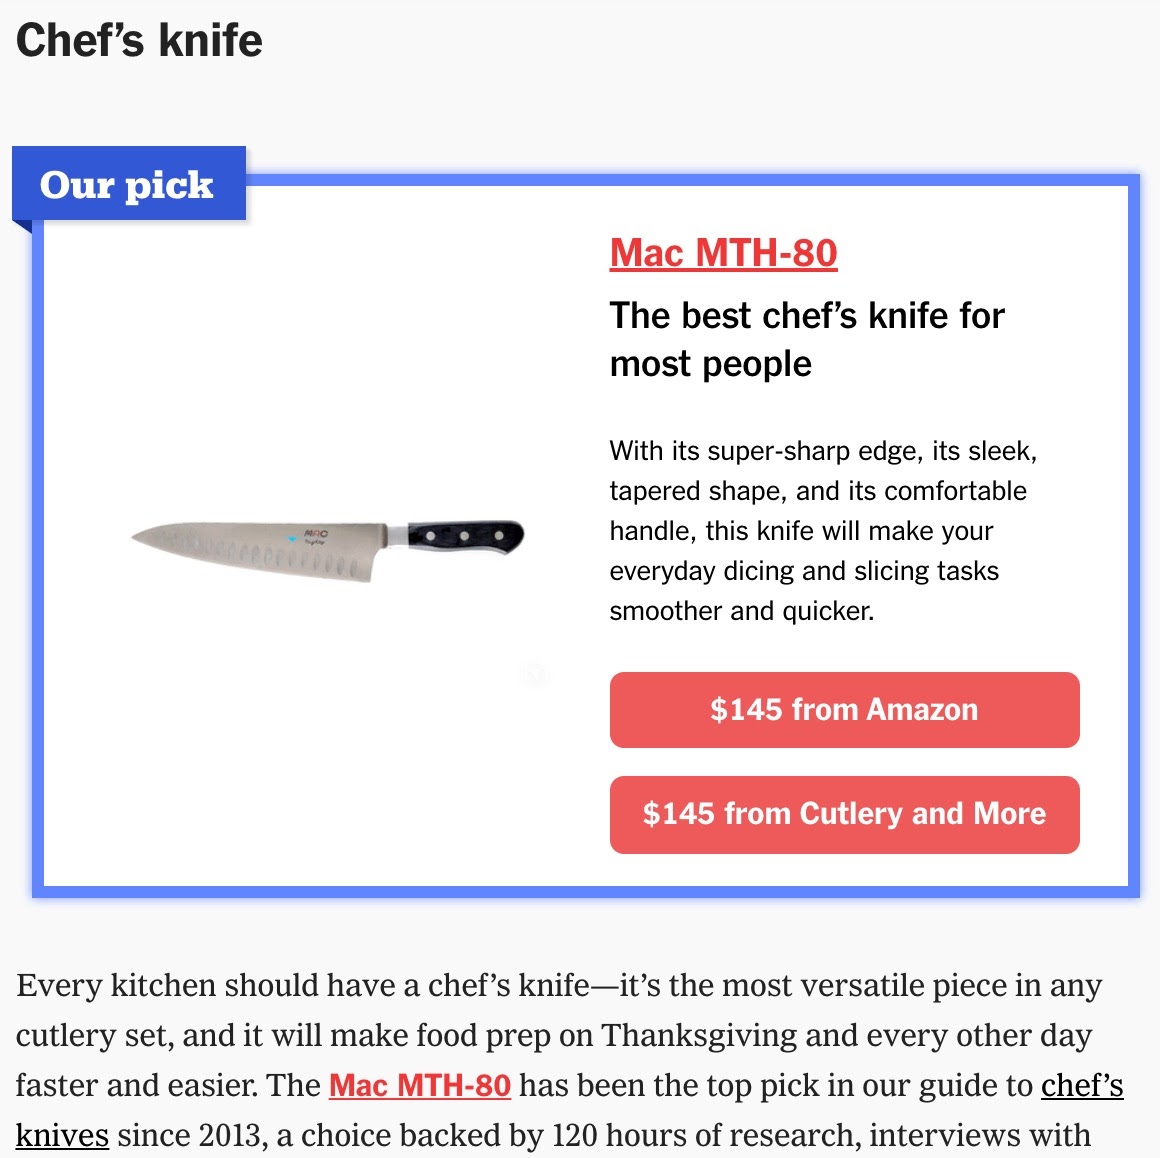 Les meilleurs ustensiles de cuisine et vaisselle de Thanksgiving pour 2019 Commentaires par Wirecutter 2